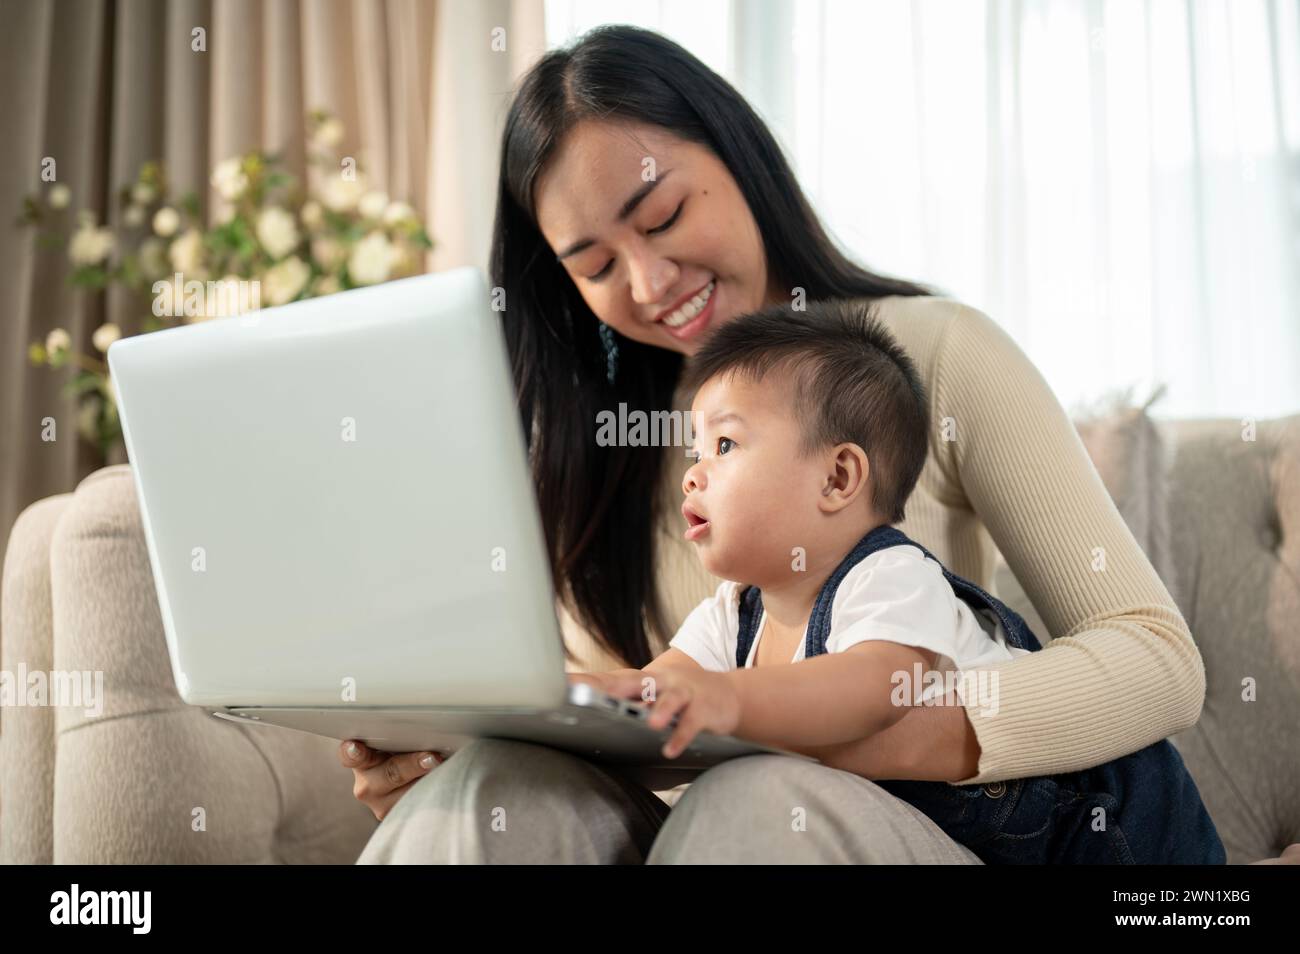 Eine glückliche asiatische Geschäftsfrau, die Mutter, arbeitet von zu Hause aus, arbeitet an ihrem Laptop und kümmert sich um ihren frechen Jungen. Stockfoto